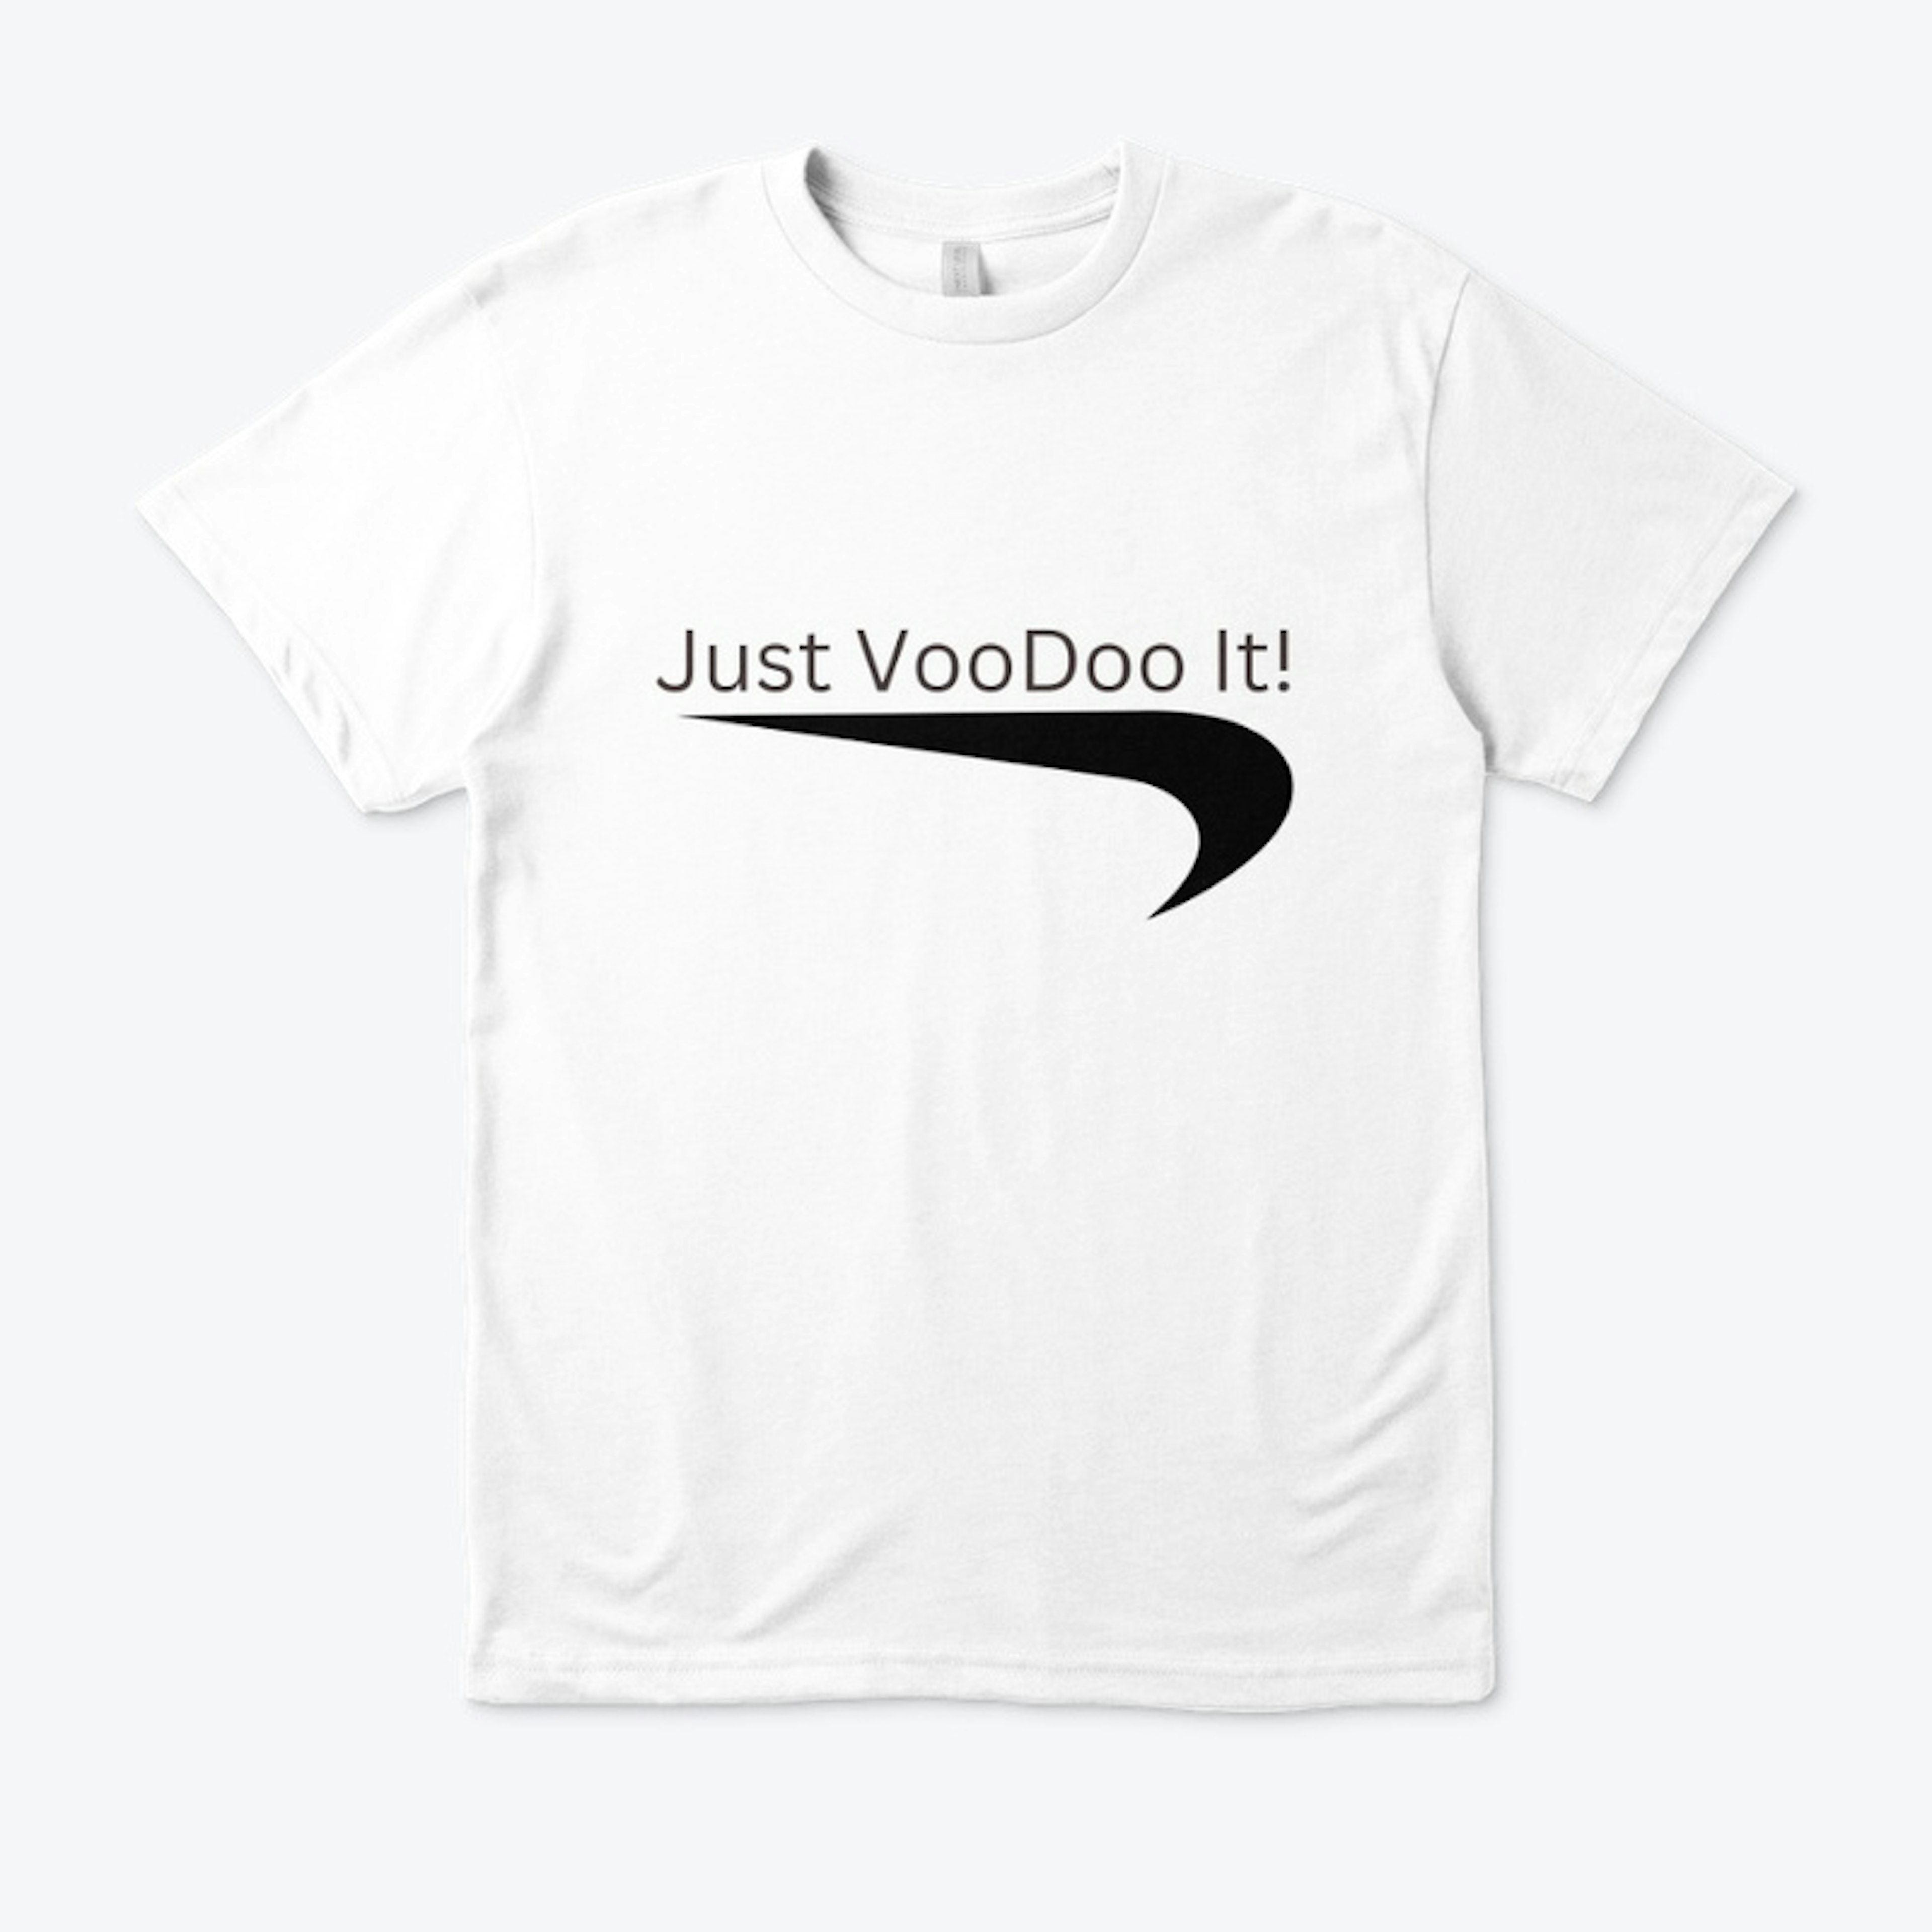 Just VooDoo It!